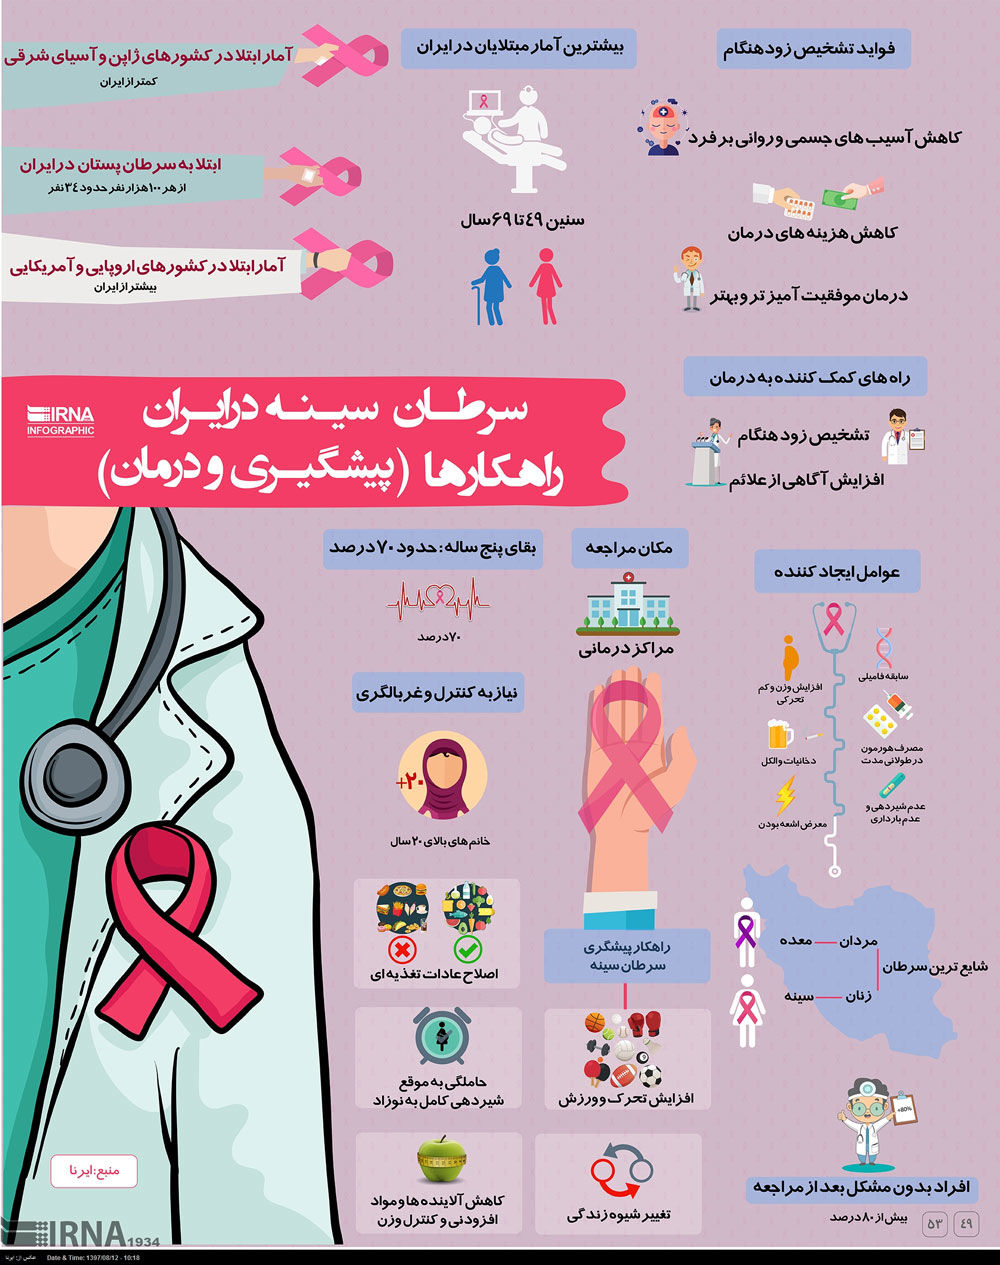 اینفوگرافیک؛ نگاهی به سرطان سینه در ایران